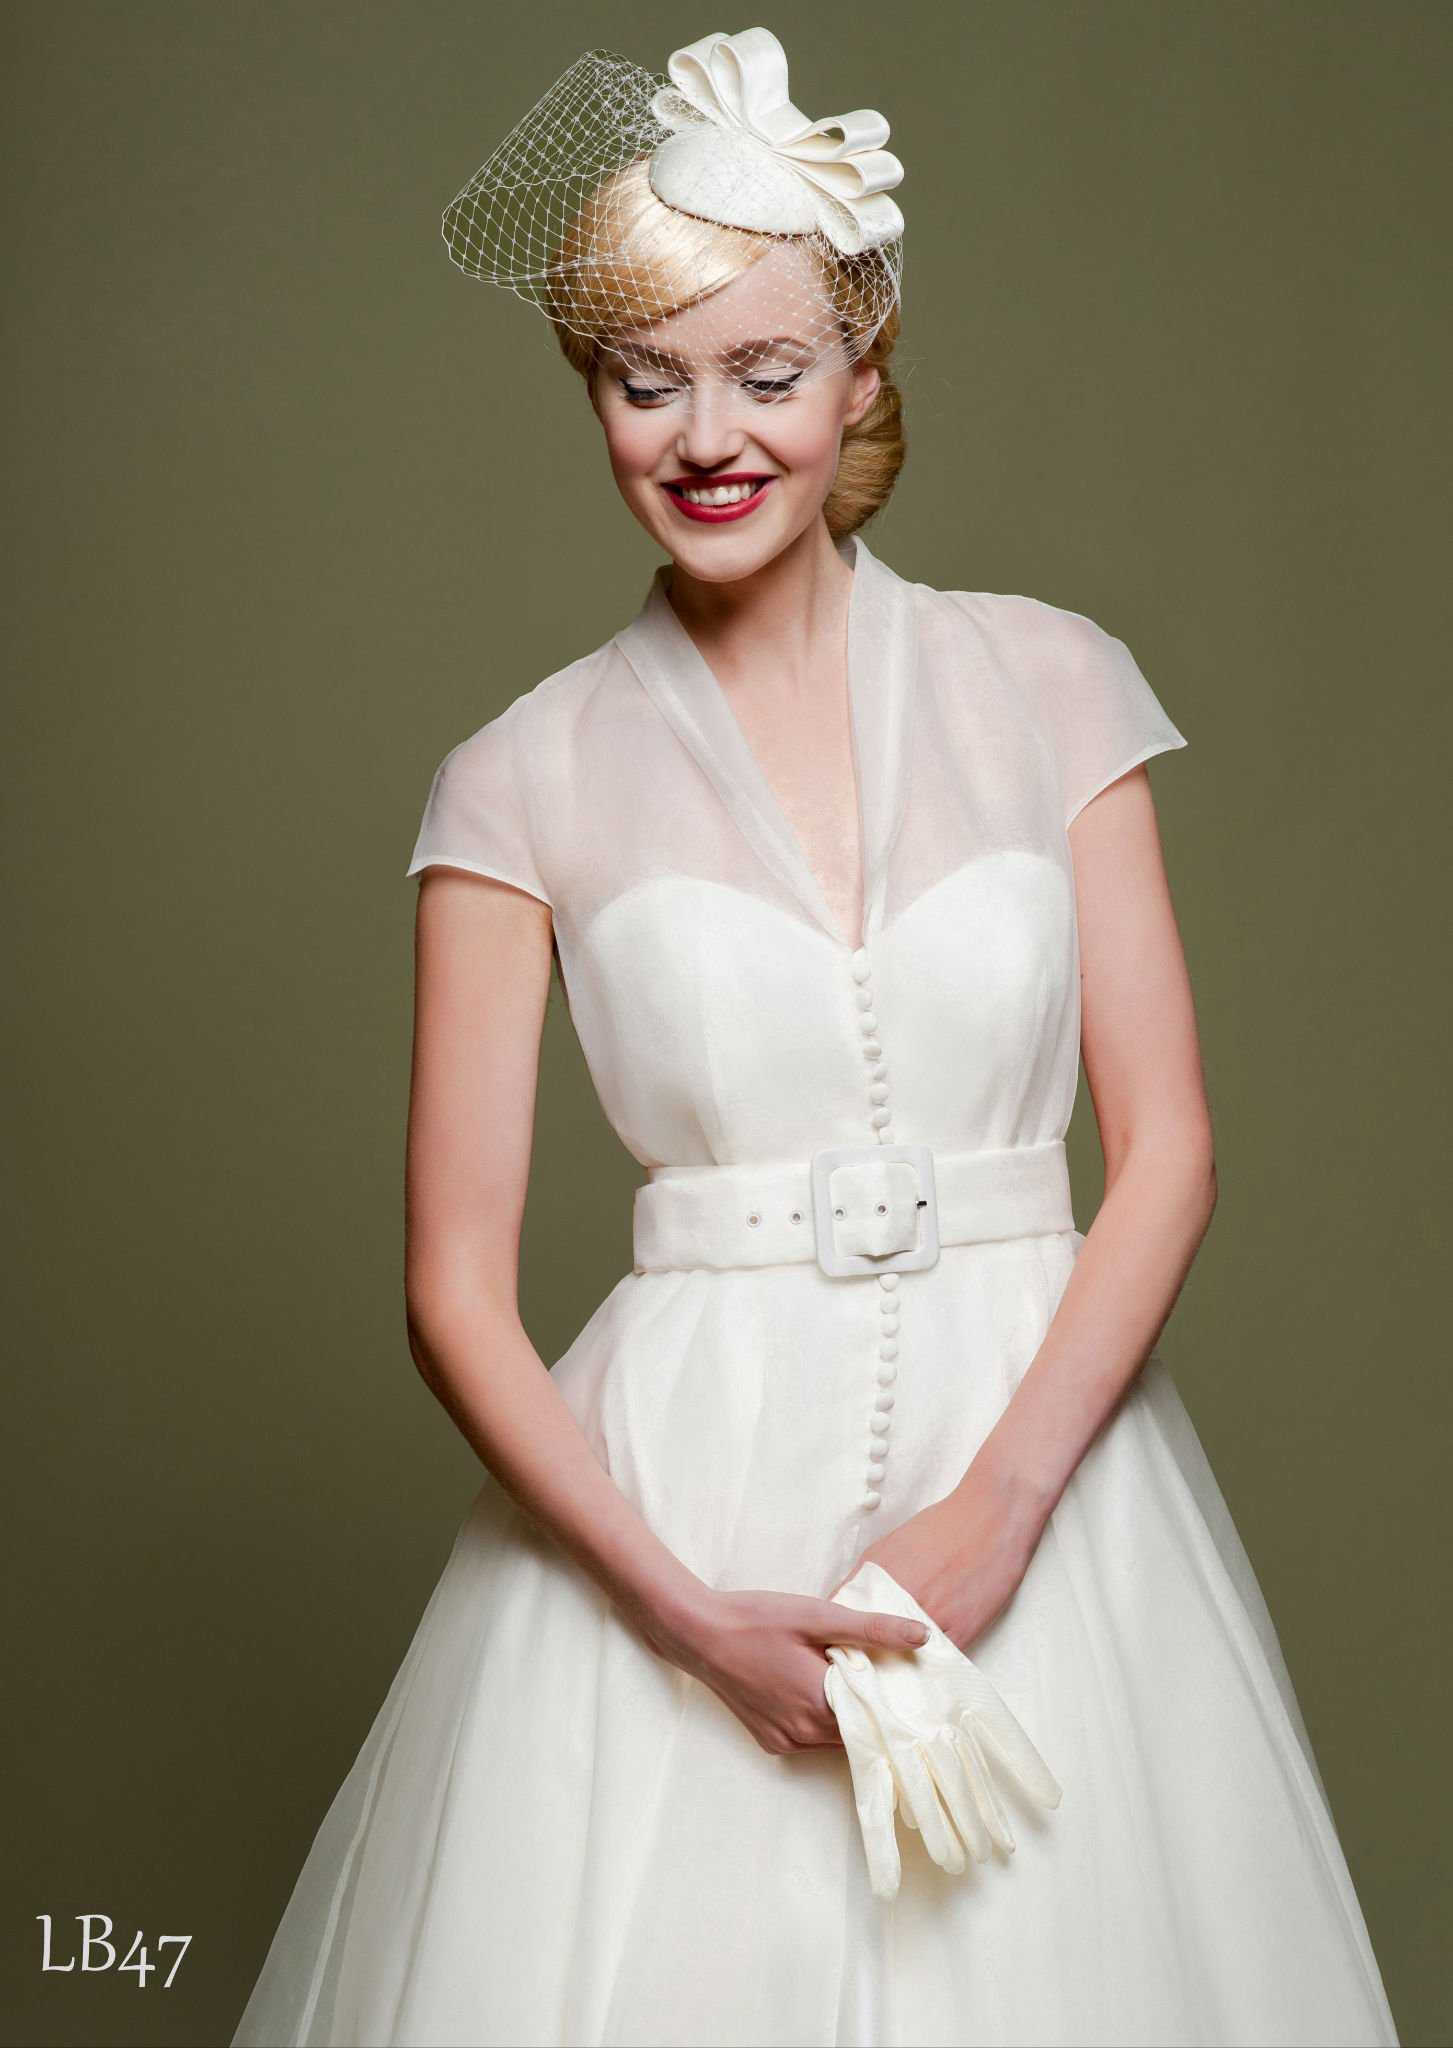 20 стилей свадебных платьев с фото